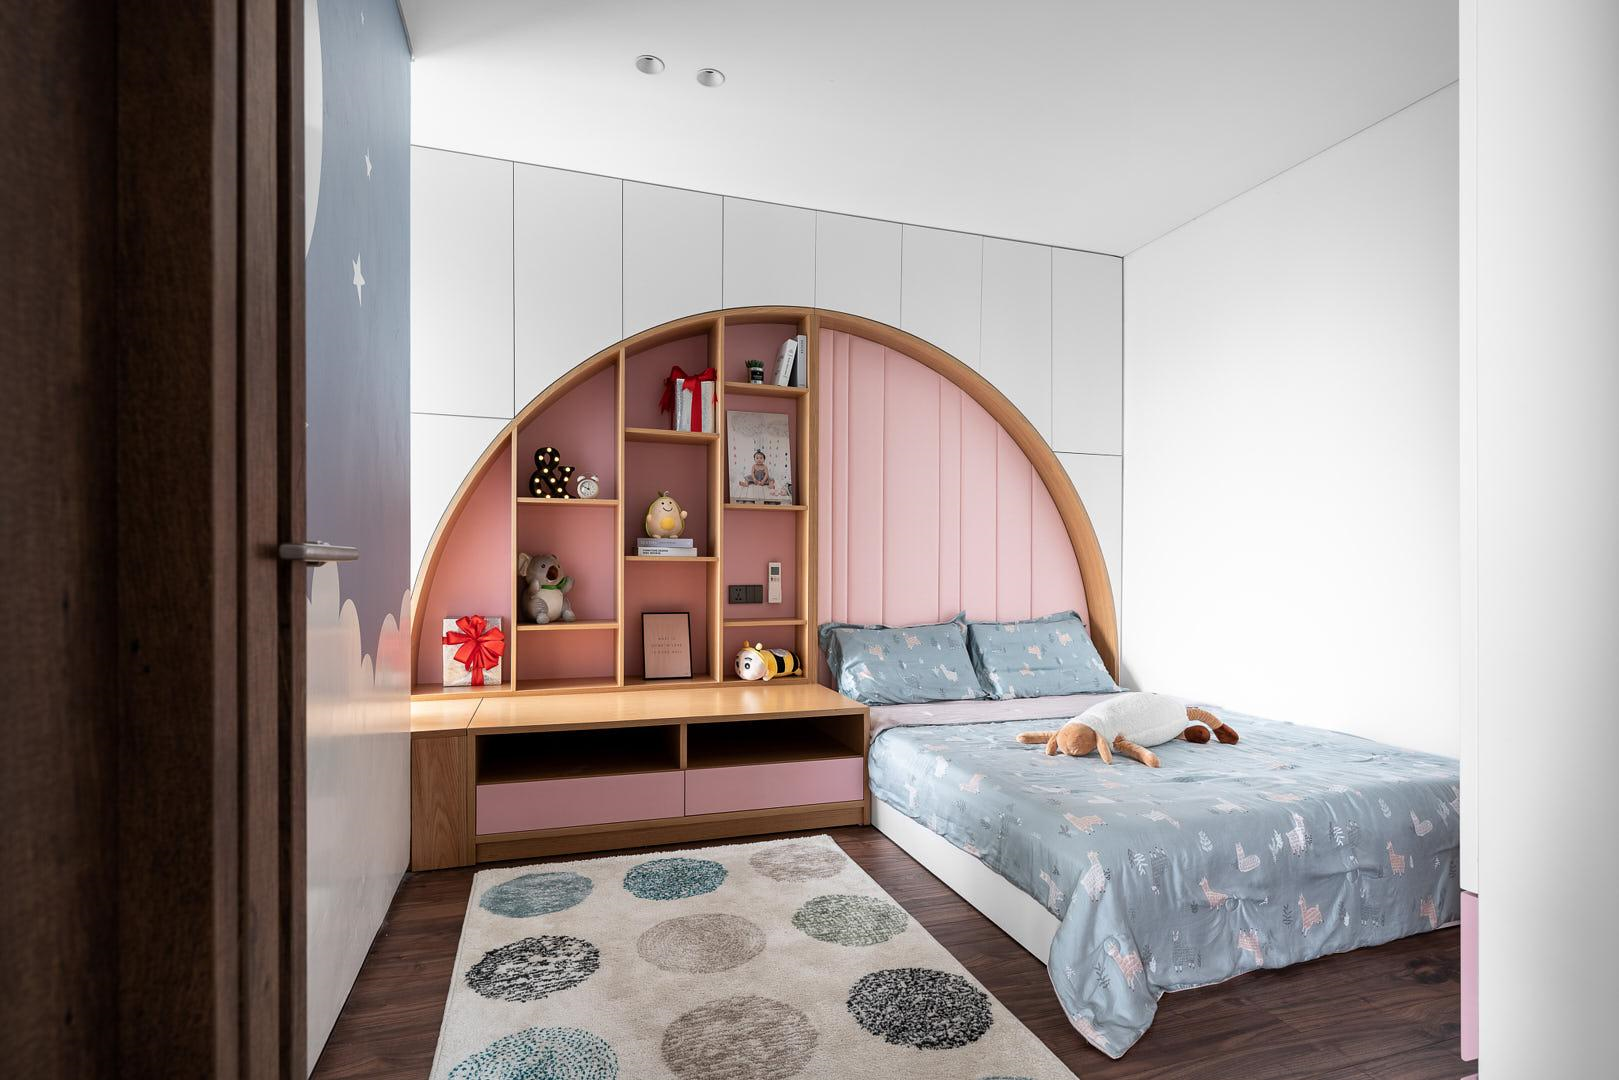 Phòng ngủ của các con sở hữu gam màu nhẹ nhàng, hài hòa với thiết kế tủ thông minh hiện đại